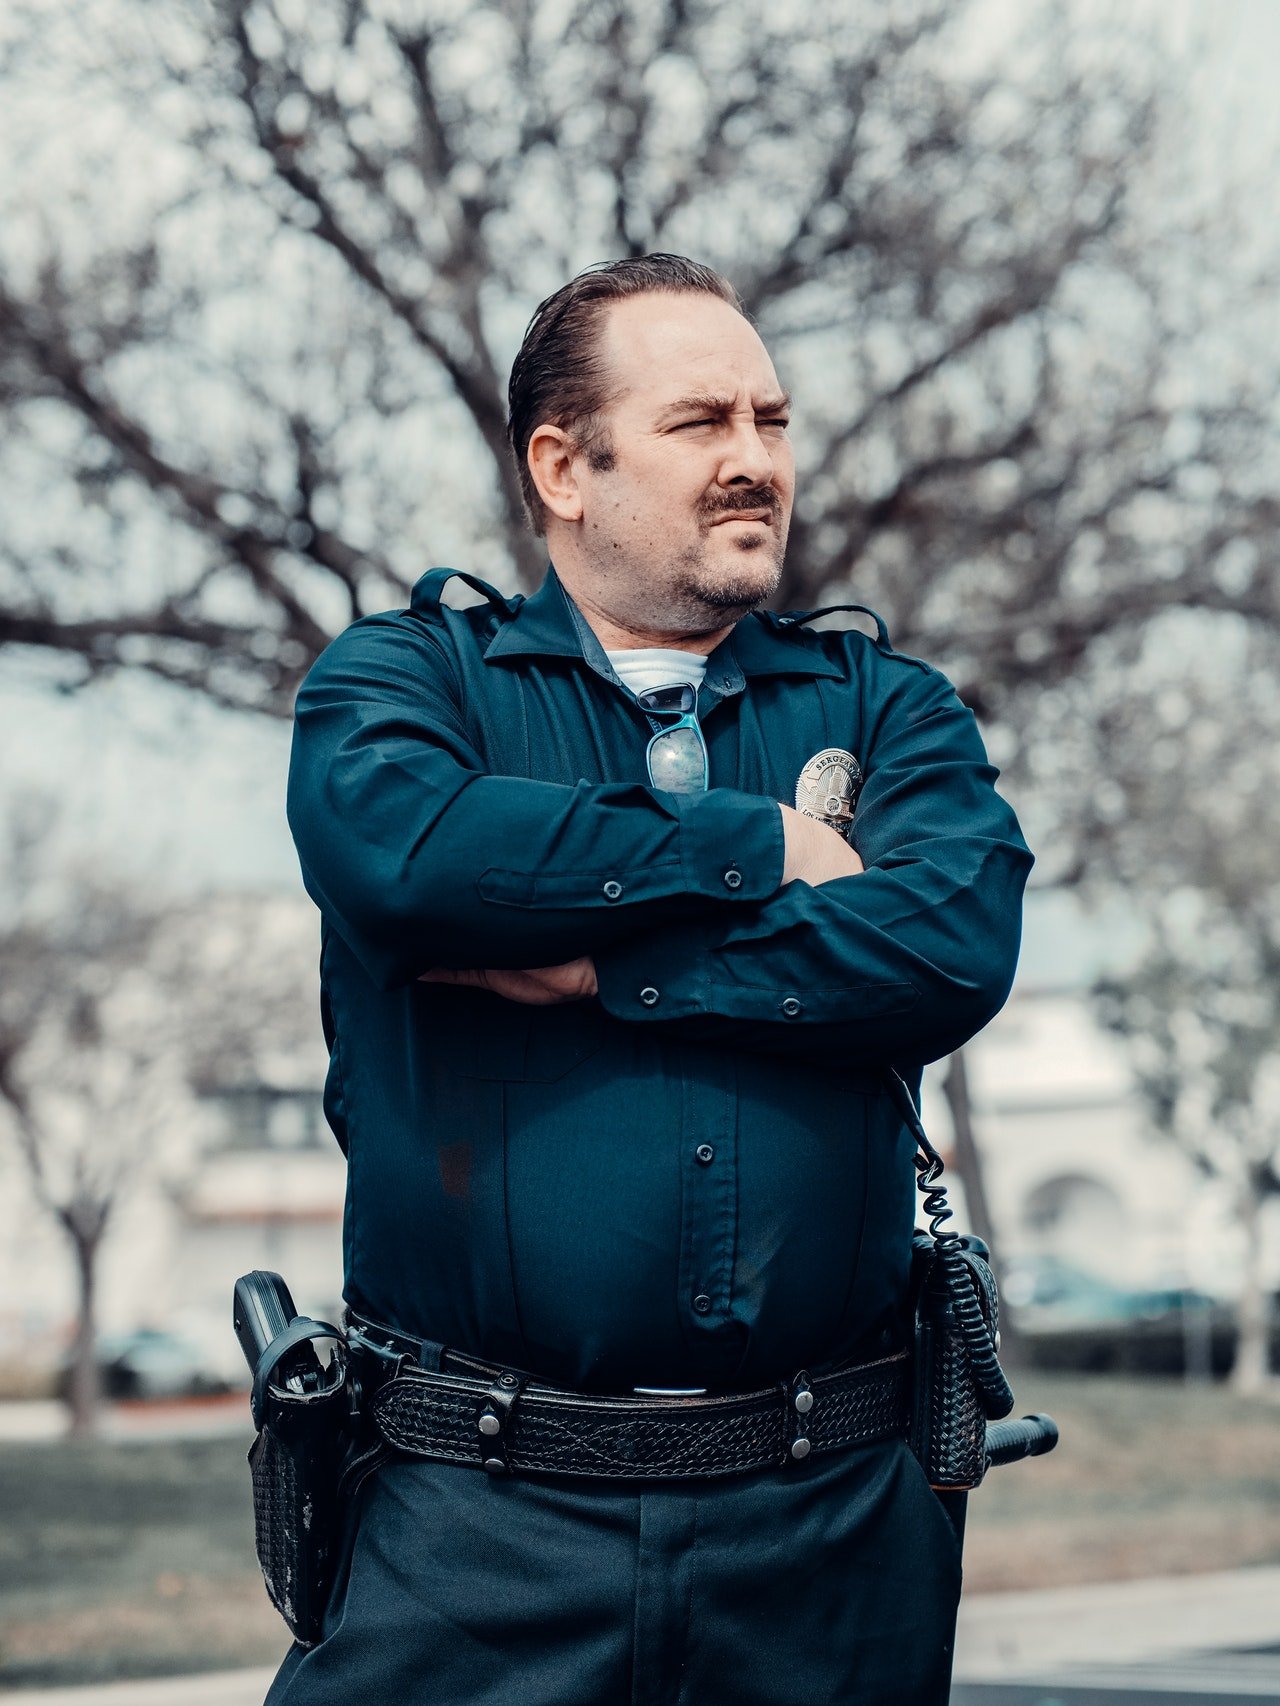 Officer Bradford scolded him for doing something so dangerous. | Source: Pexels